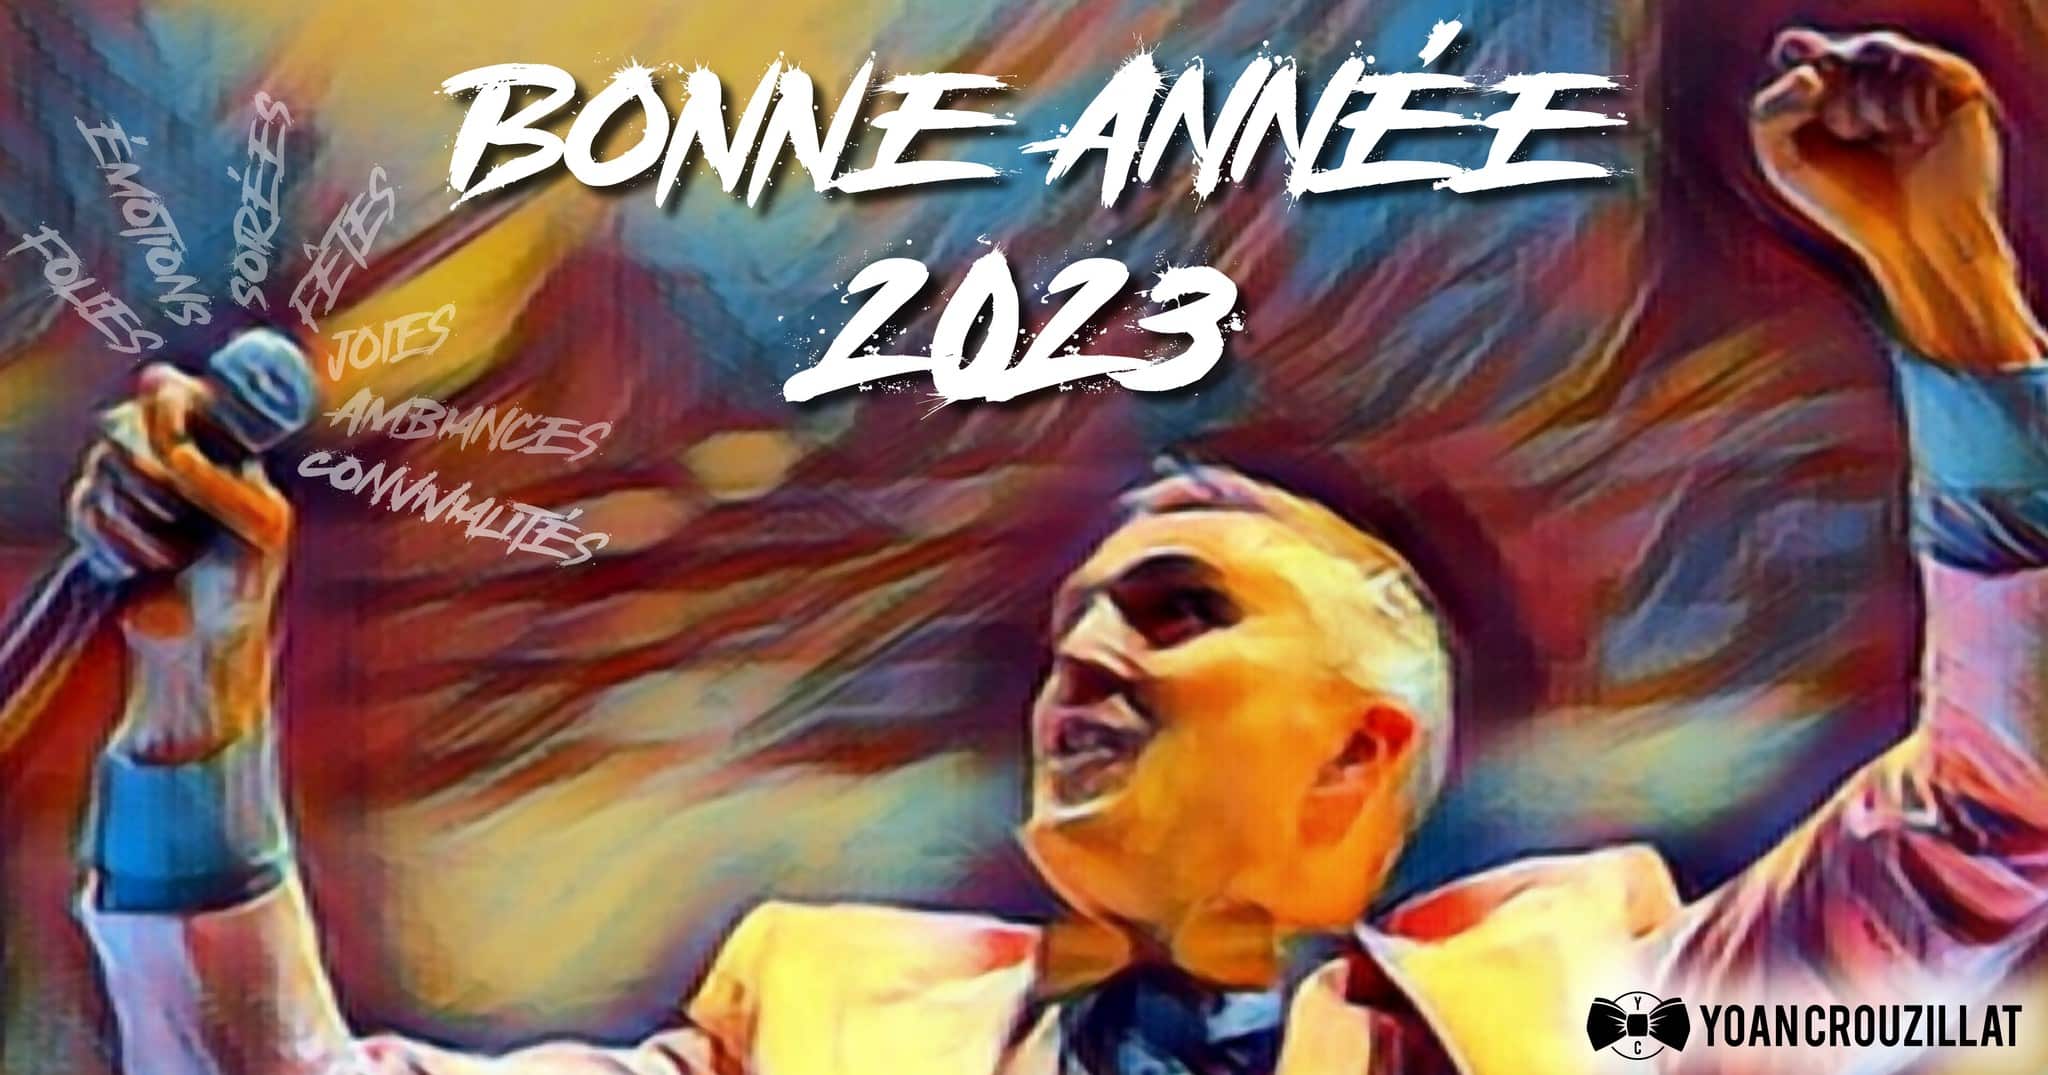 Bonne année 2023 de la part de Yoan speaker maibnacuer et DJ à Toulouse et dans le Tarn